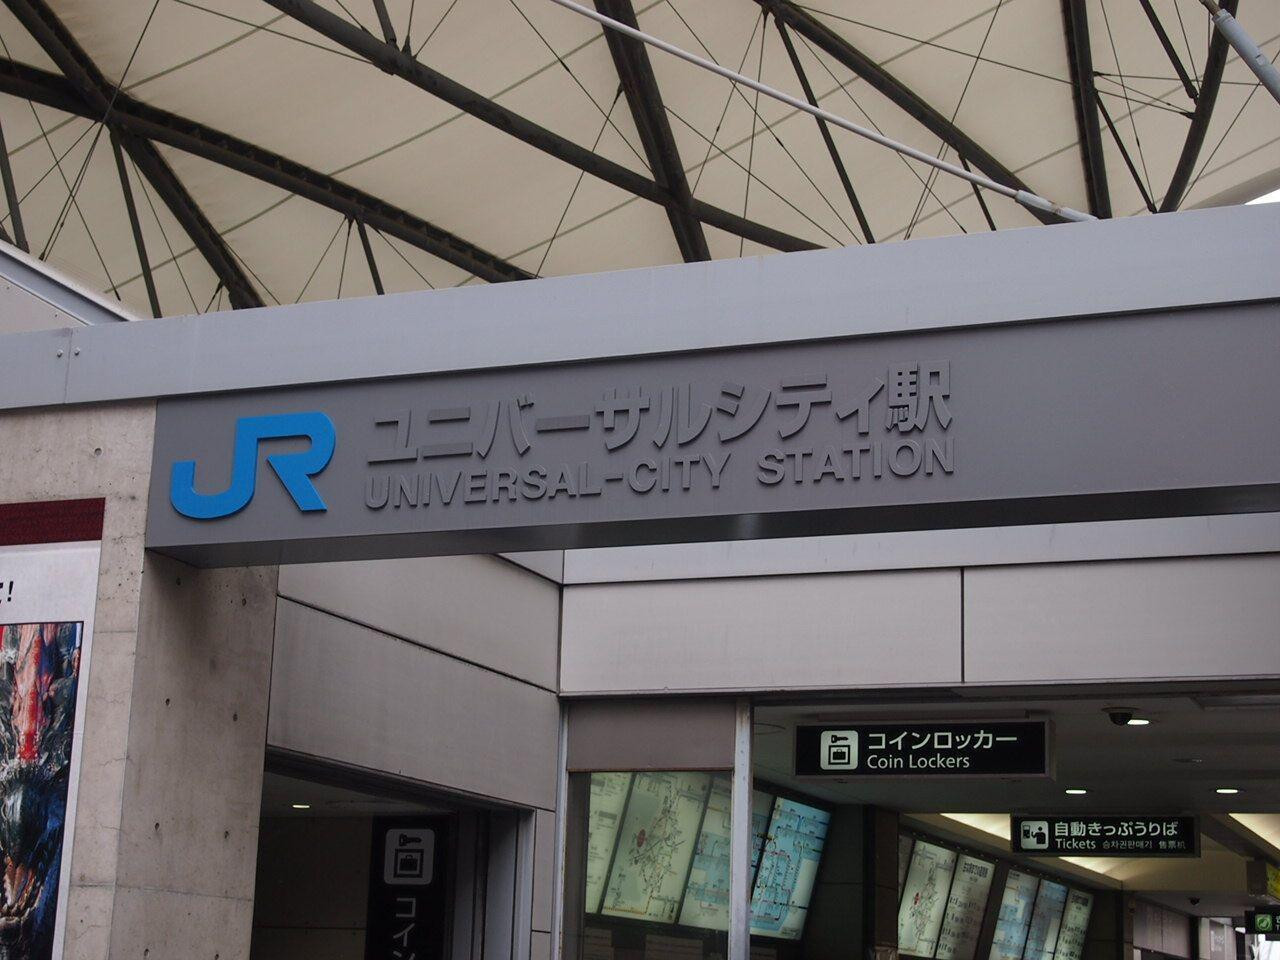 Usj 名古屋からユニバへのアクセス徹底解説 日帰りできる 新幹線 電車 バス 自家用車を比較